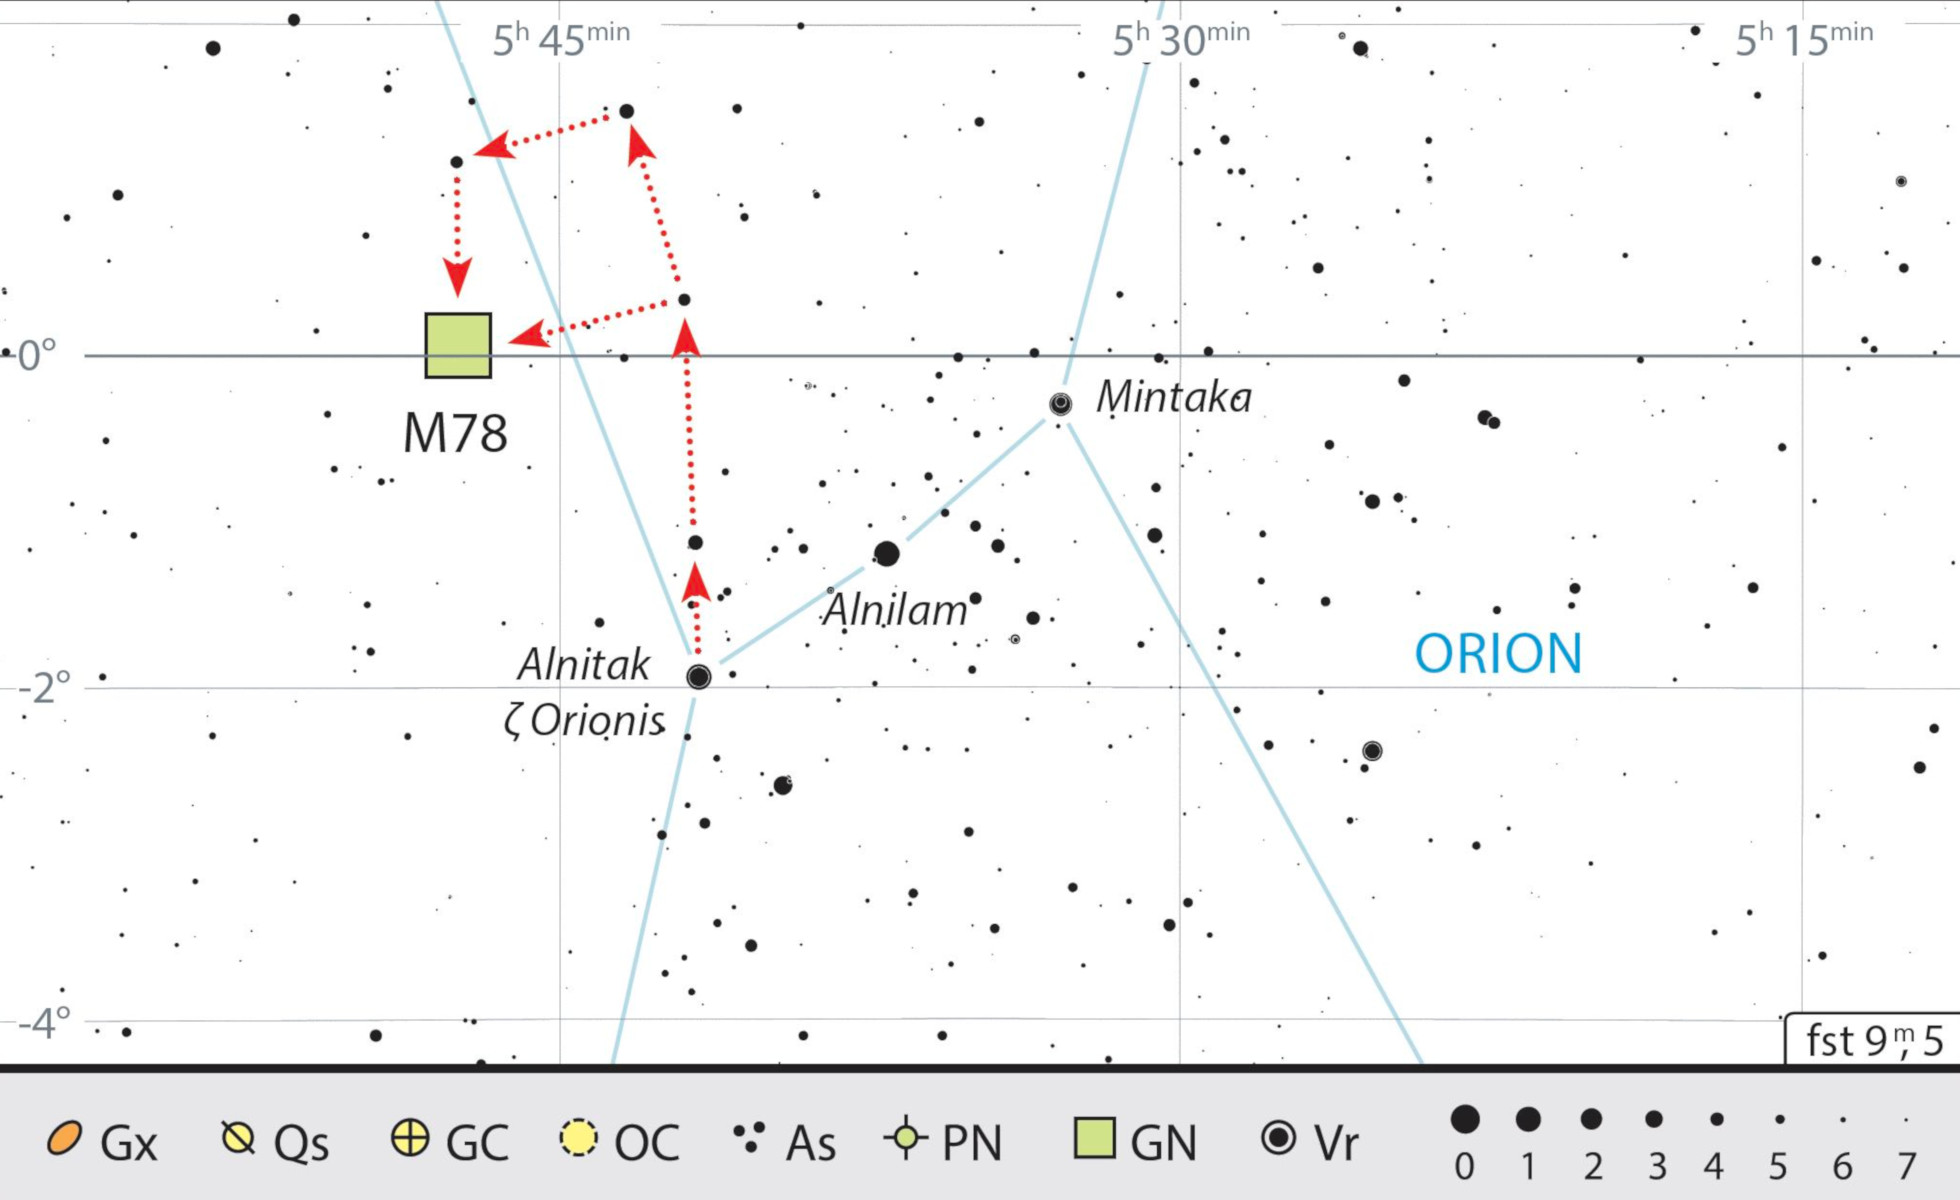 Mappa celeste per M 78 in Orione. J. Scholten